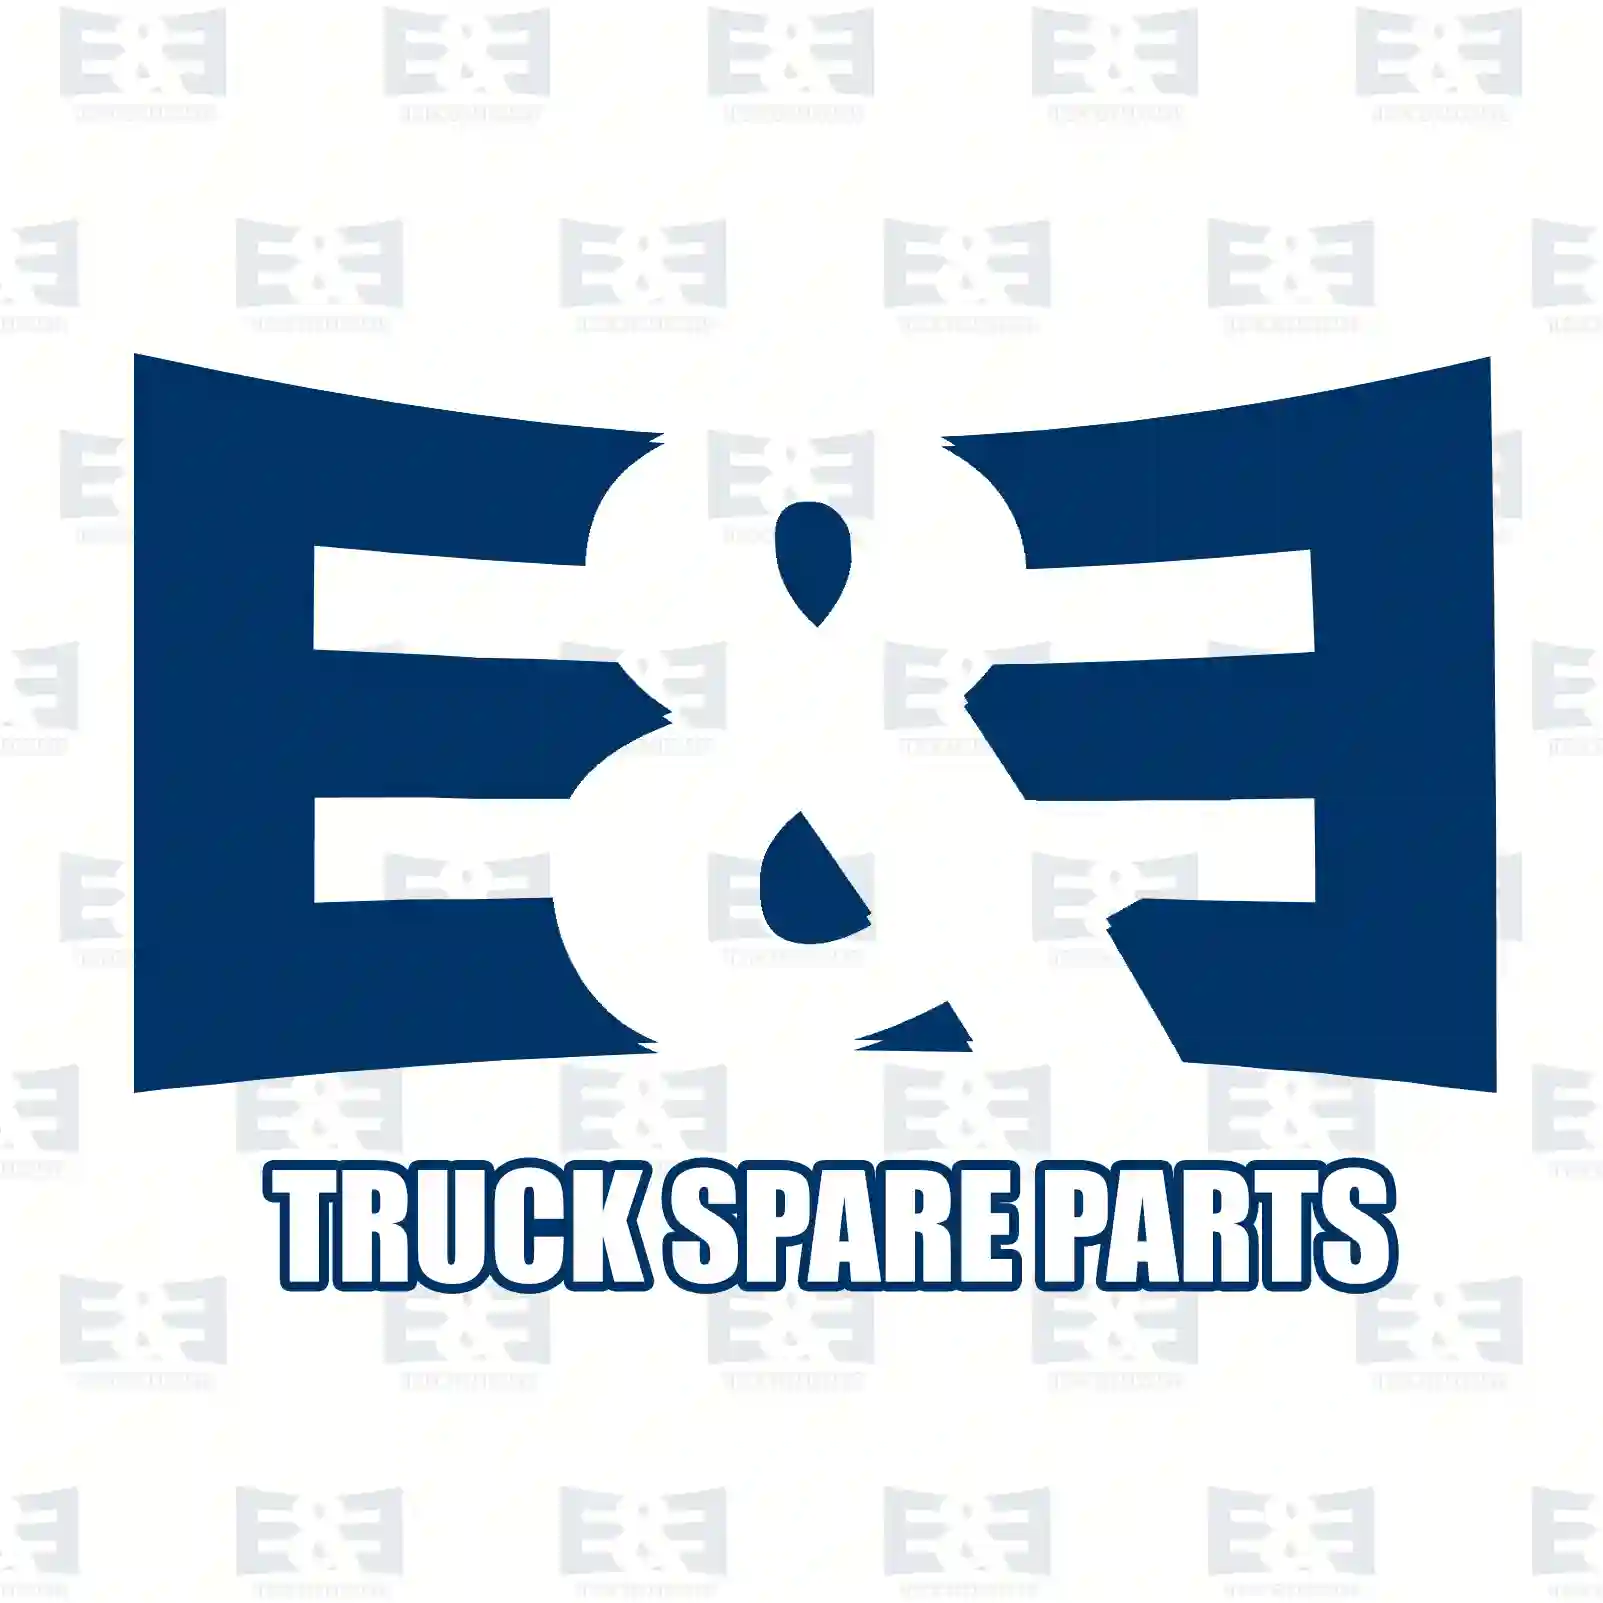 Nozzle holder, 2E2286659, 51101006037, 51101007440, 51101007452 ||  2E2286659 E&E Truck Spare Parts | Truck Spare Parts, Auotomotive Spare Parts Nozzle holder, 2E2286659, 51101006037, 51101007440, 51101007452 ||  2E2286659 E&E Truck Spare Parts | Truck Spare Parts, Auotomotive Spare Parts